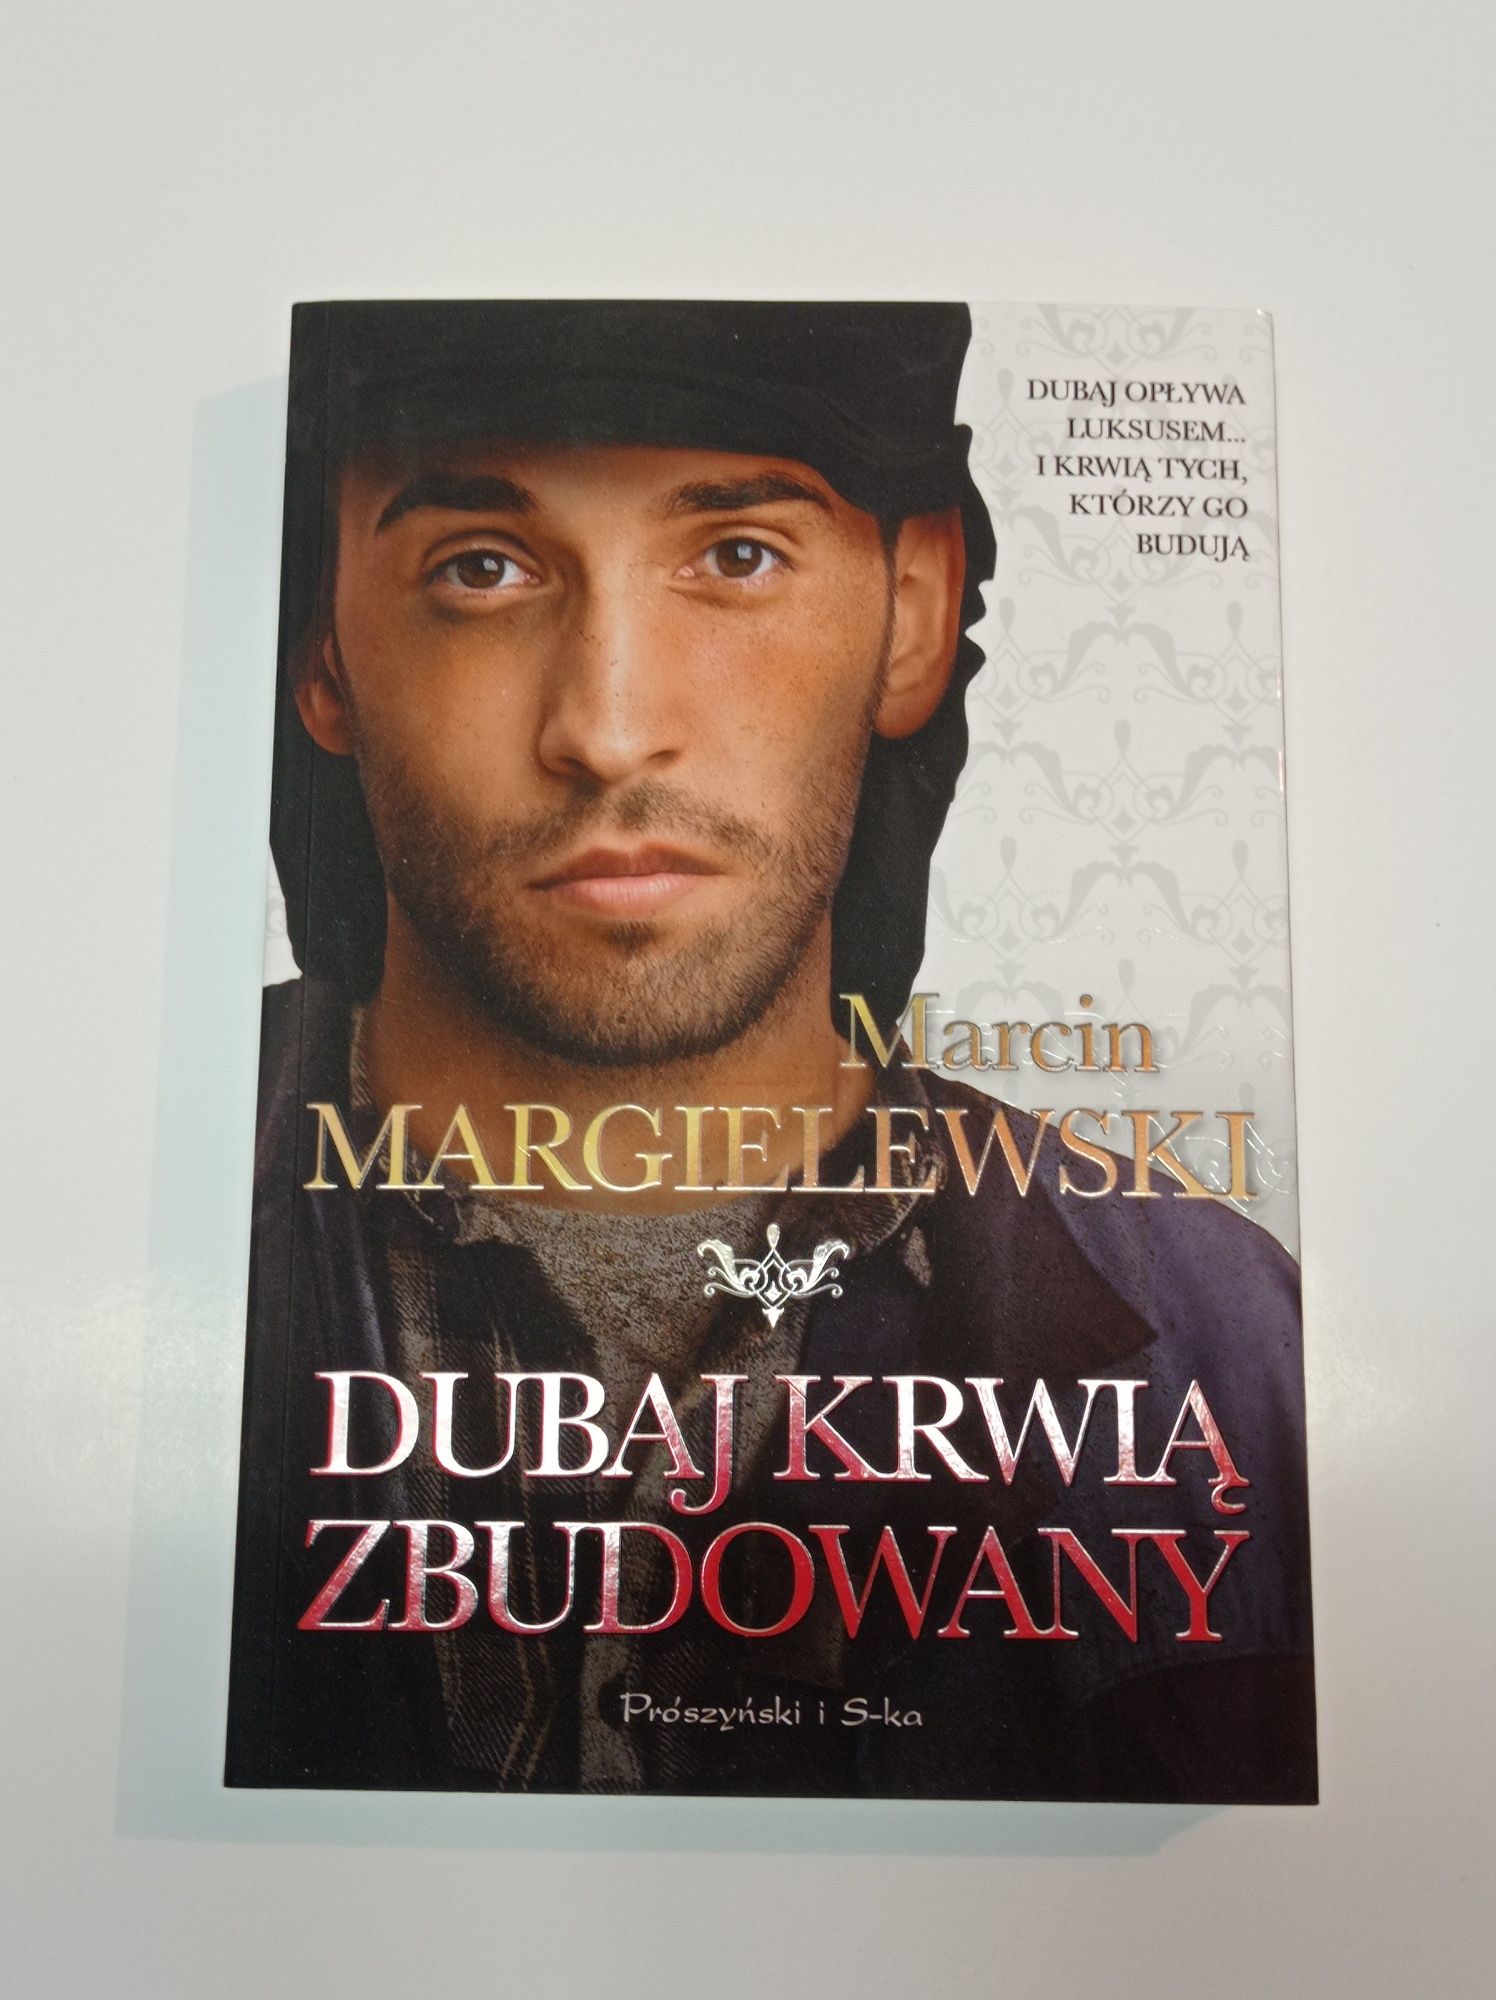 Sprzedam książki Marcina Margielewskiego 4 szt. Dubaj